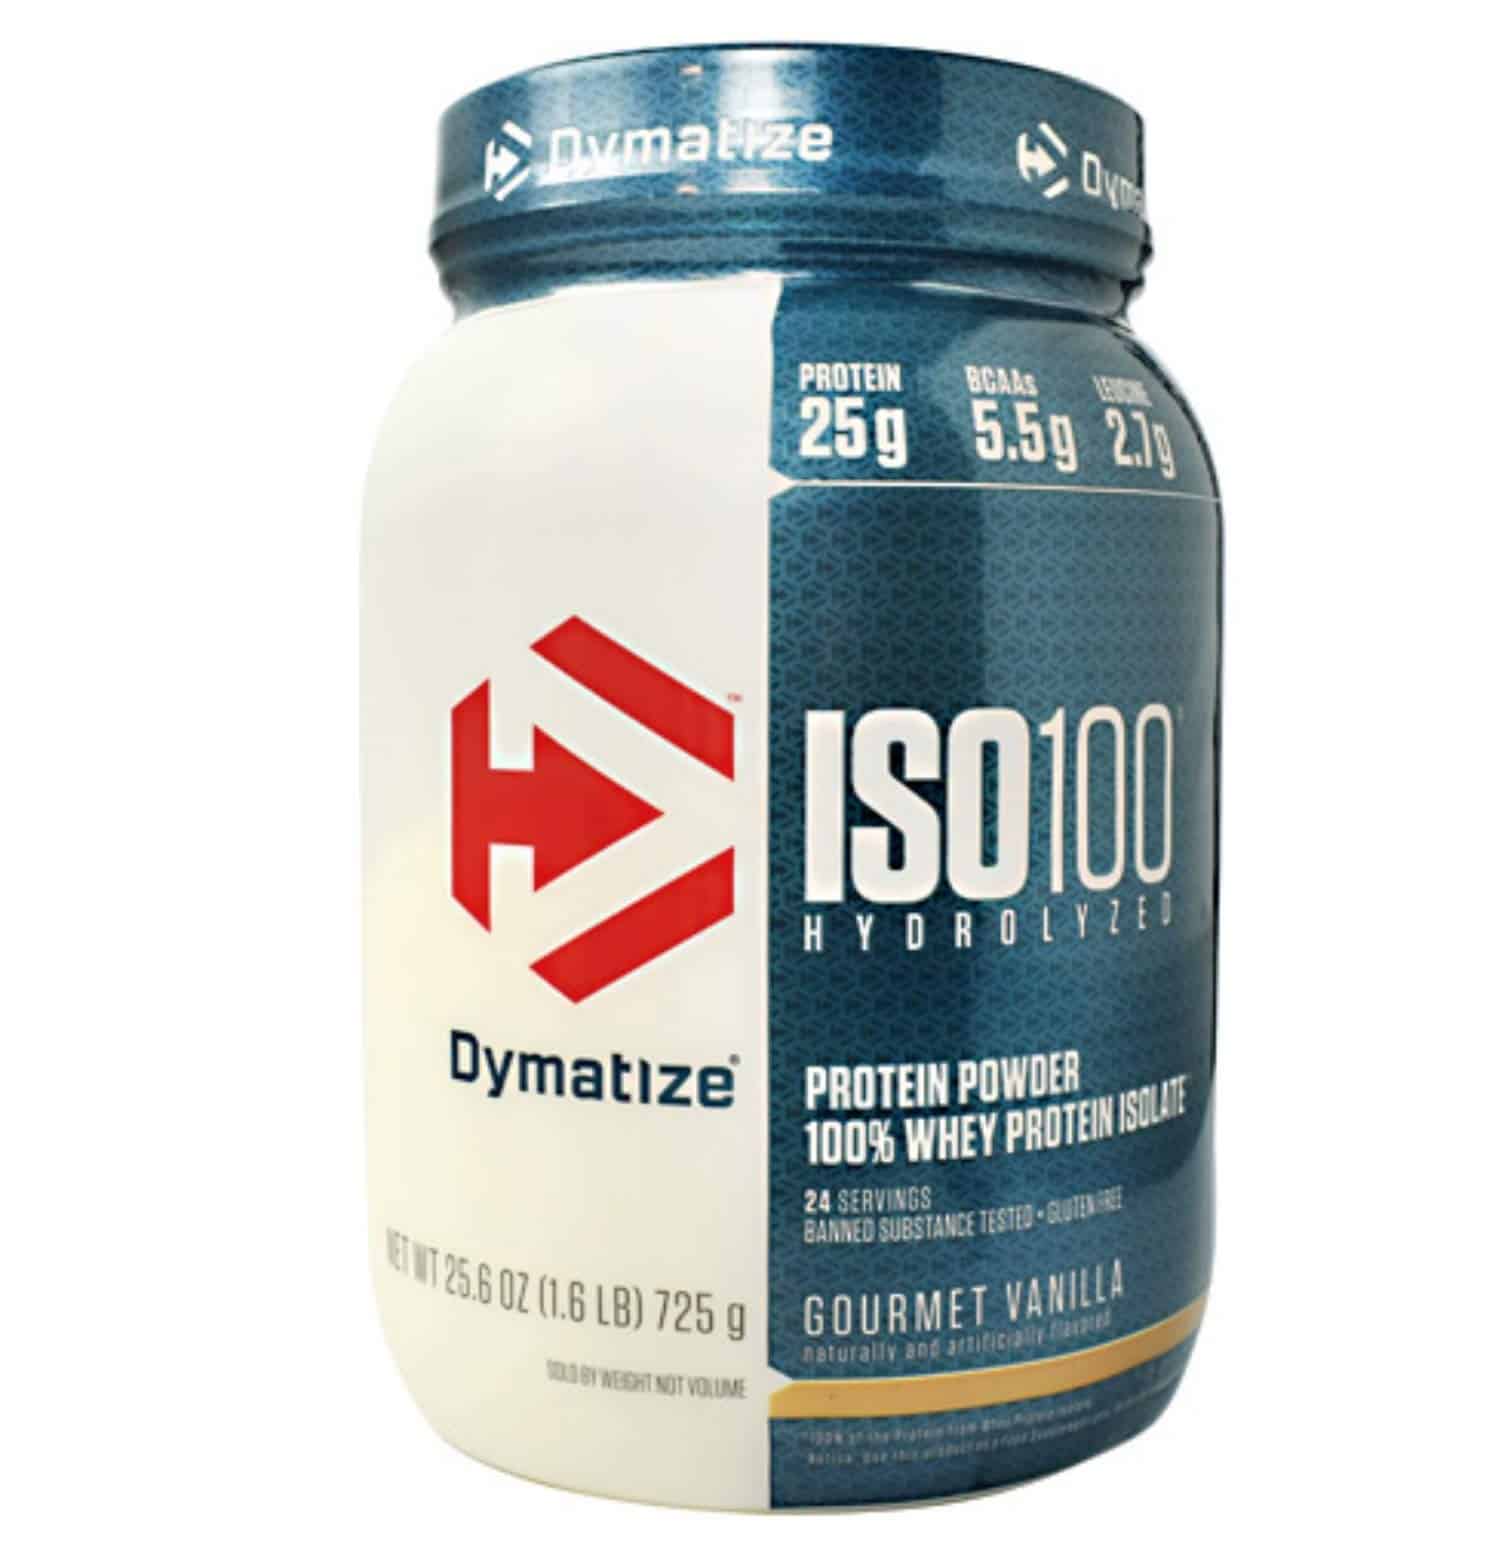 Amazon.com: Dymatize ISO 100 Whey Protein Powder with 25g of Hydrolyzed ...